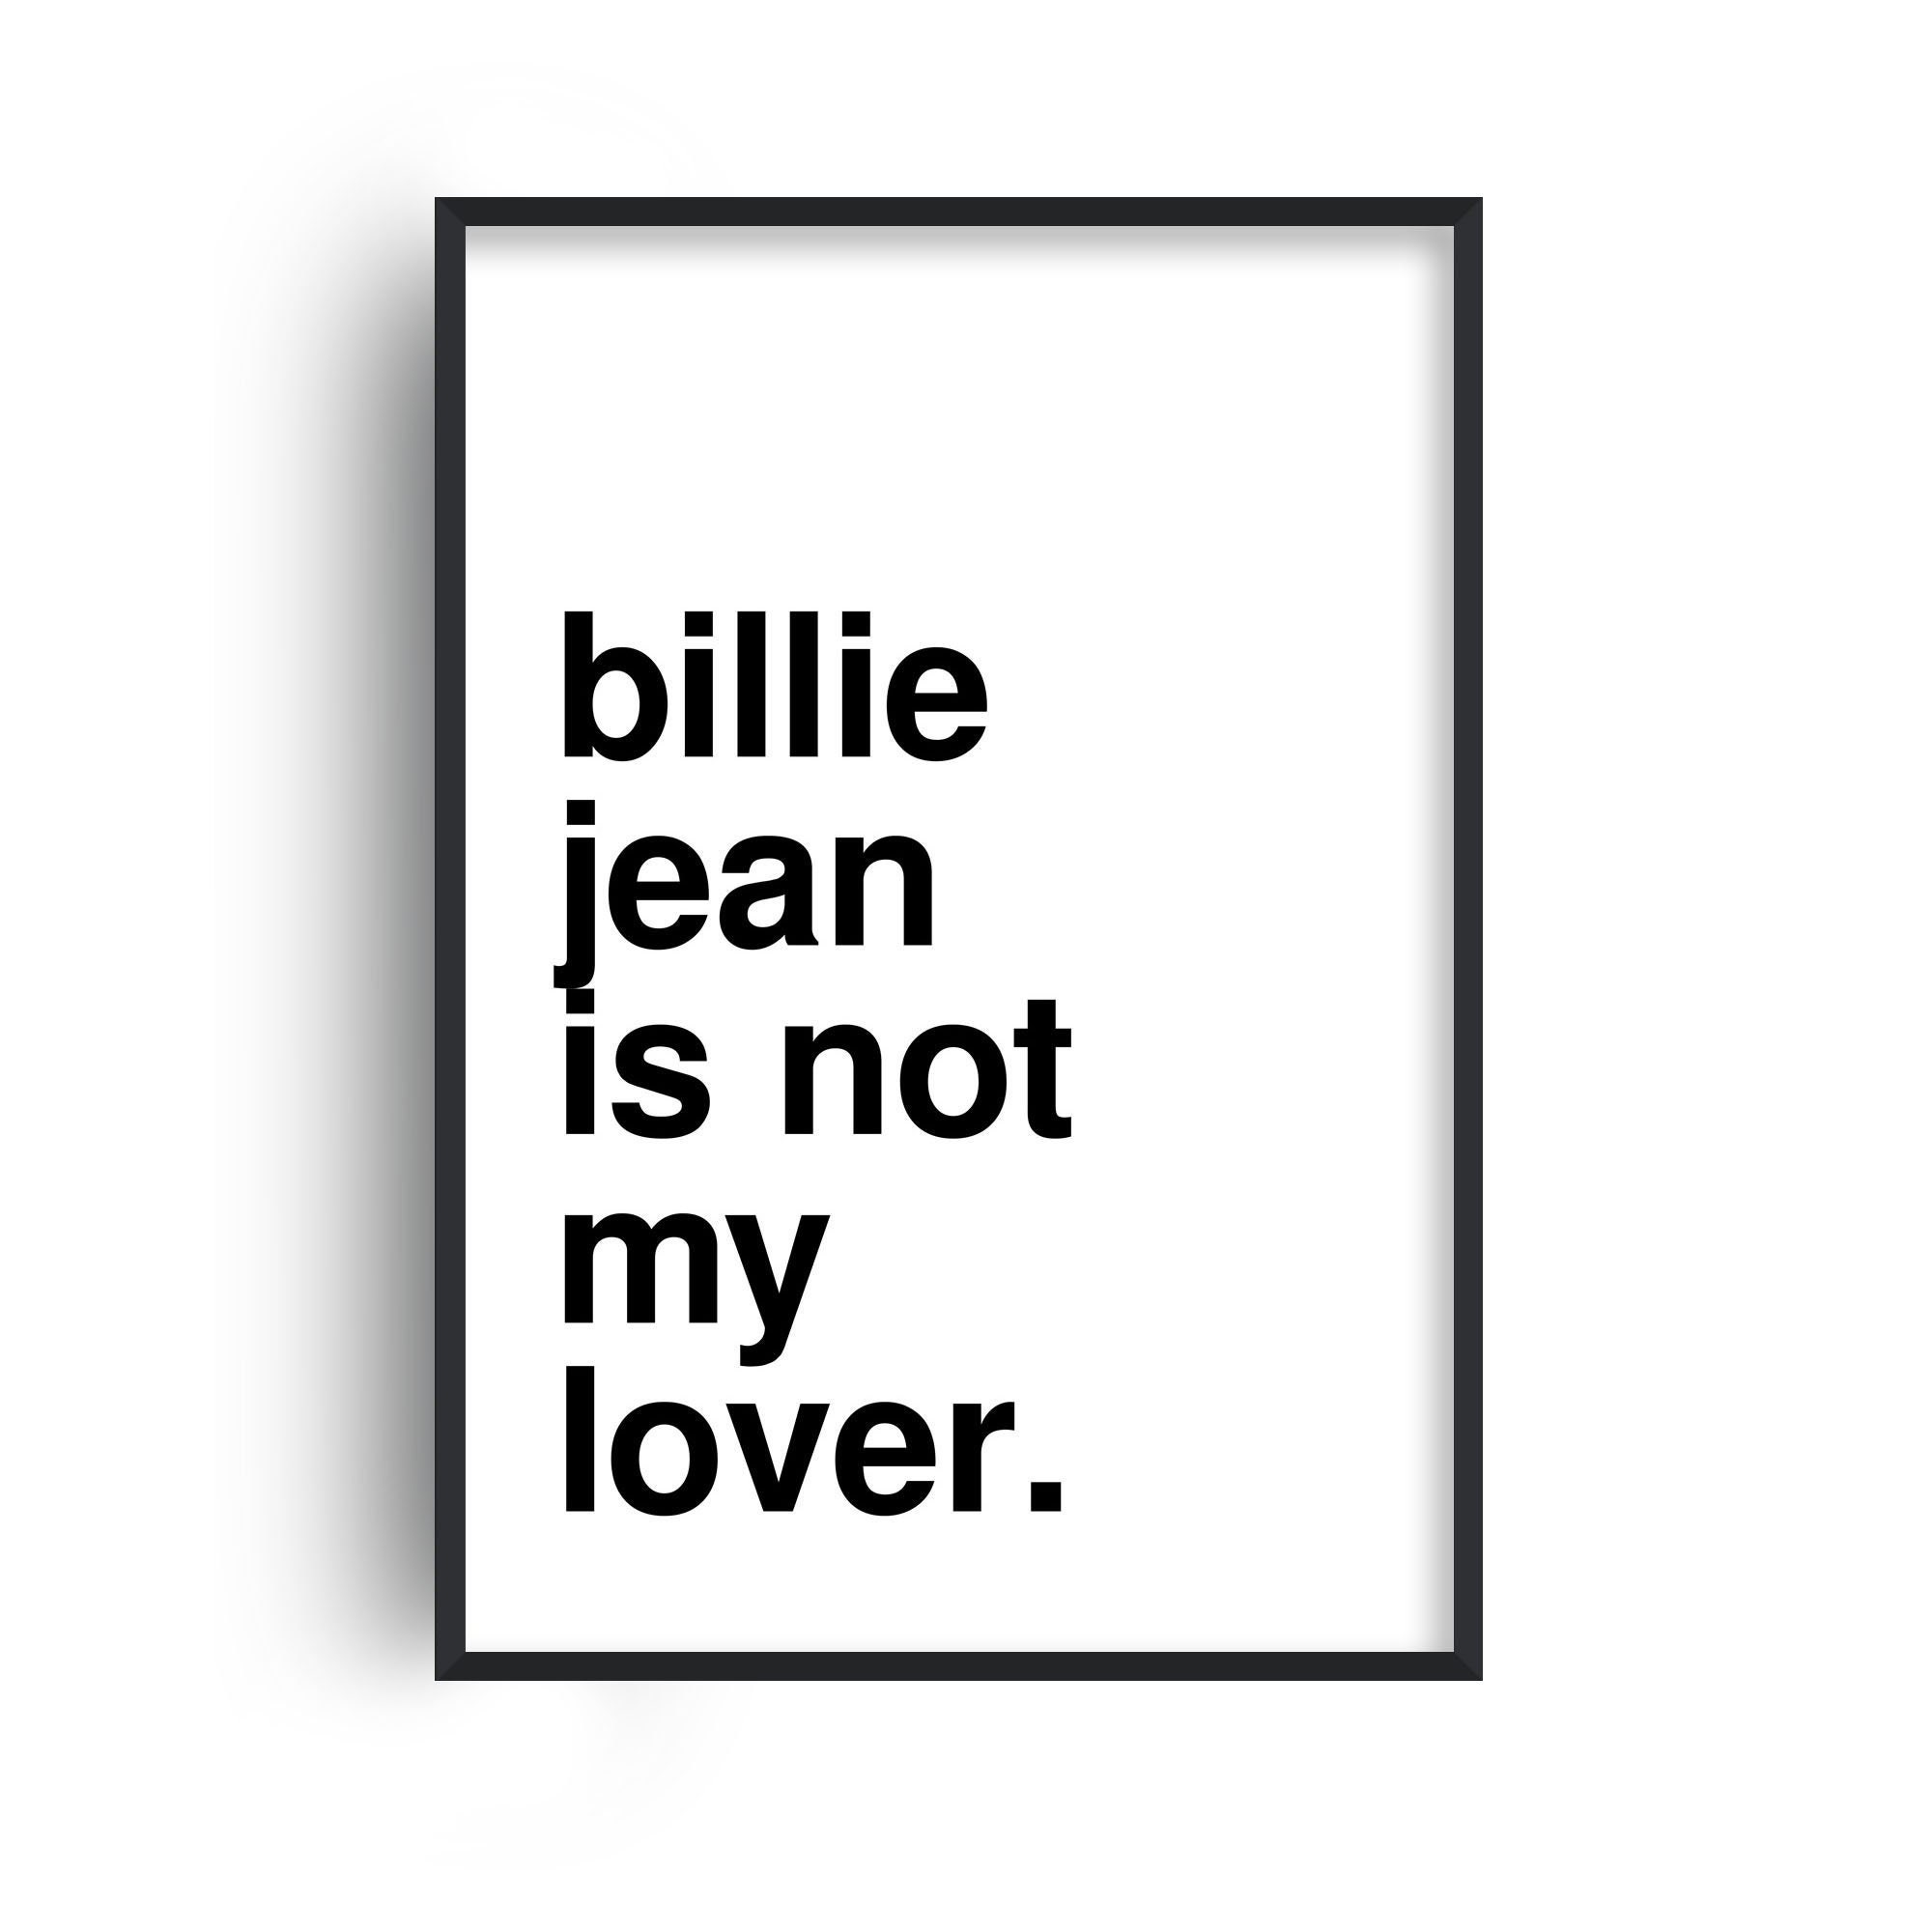 Billie jean is not my lover meme